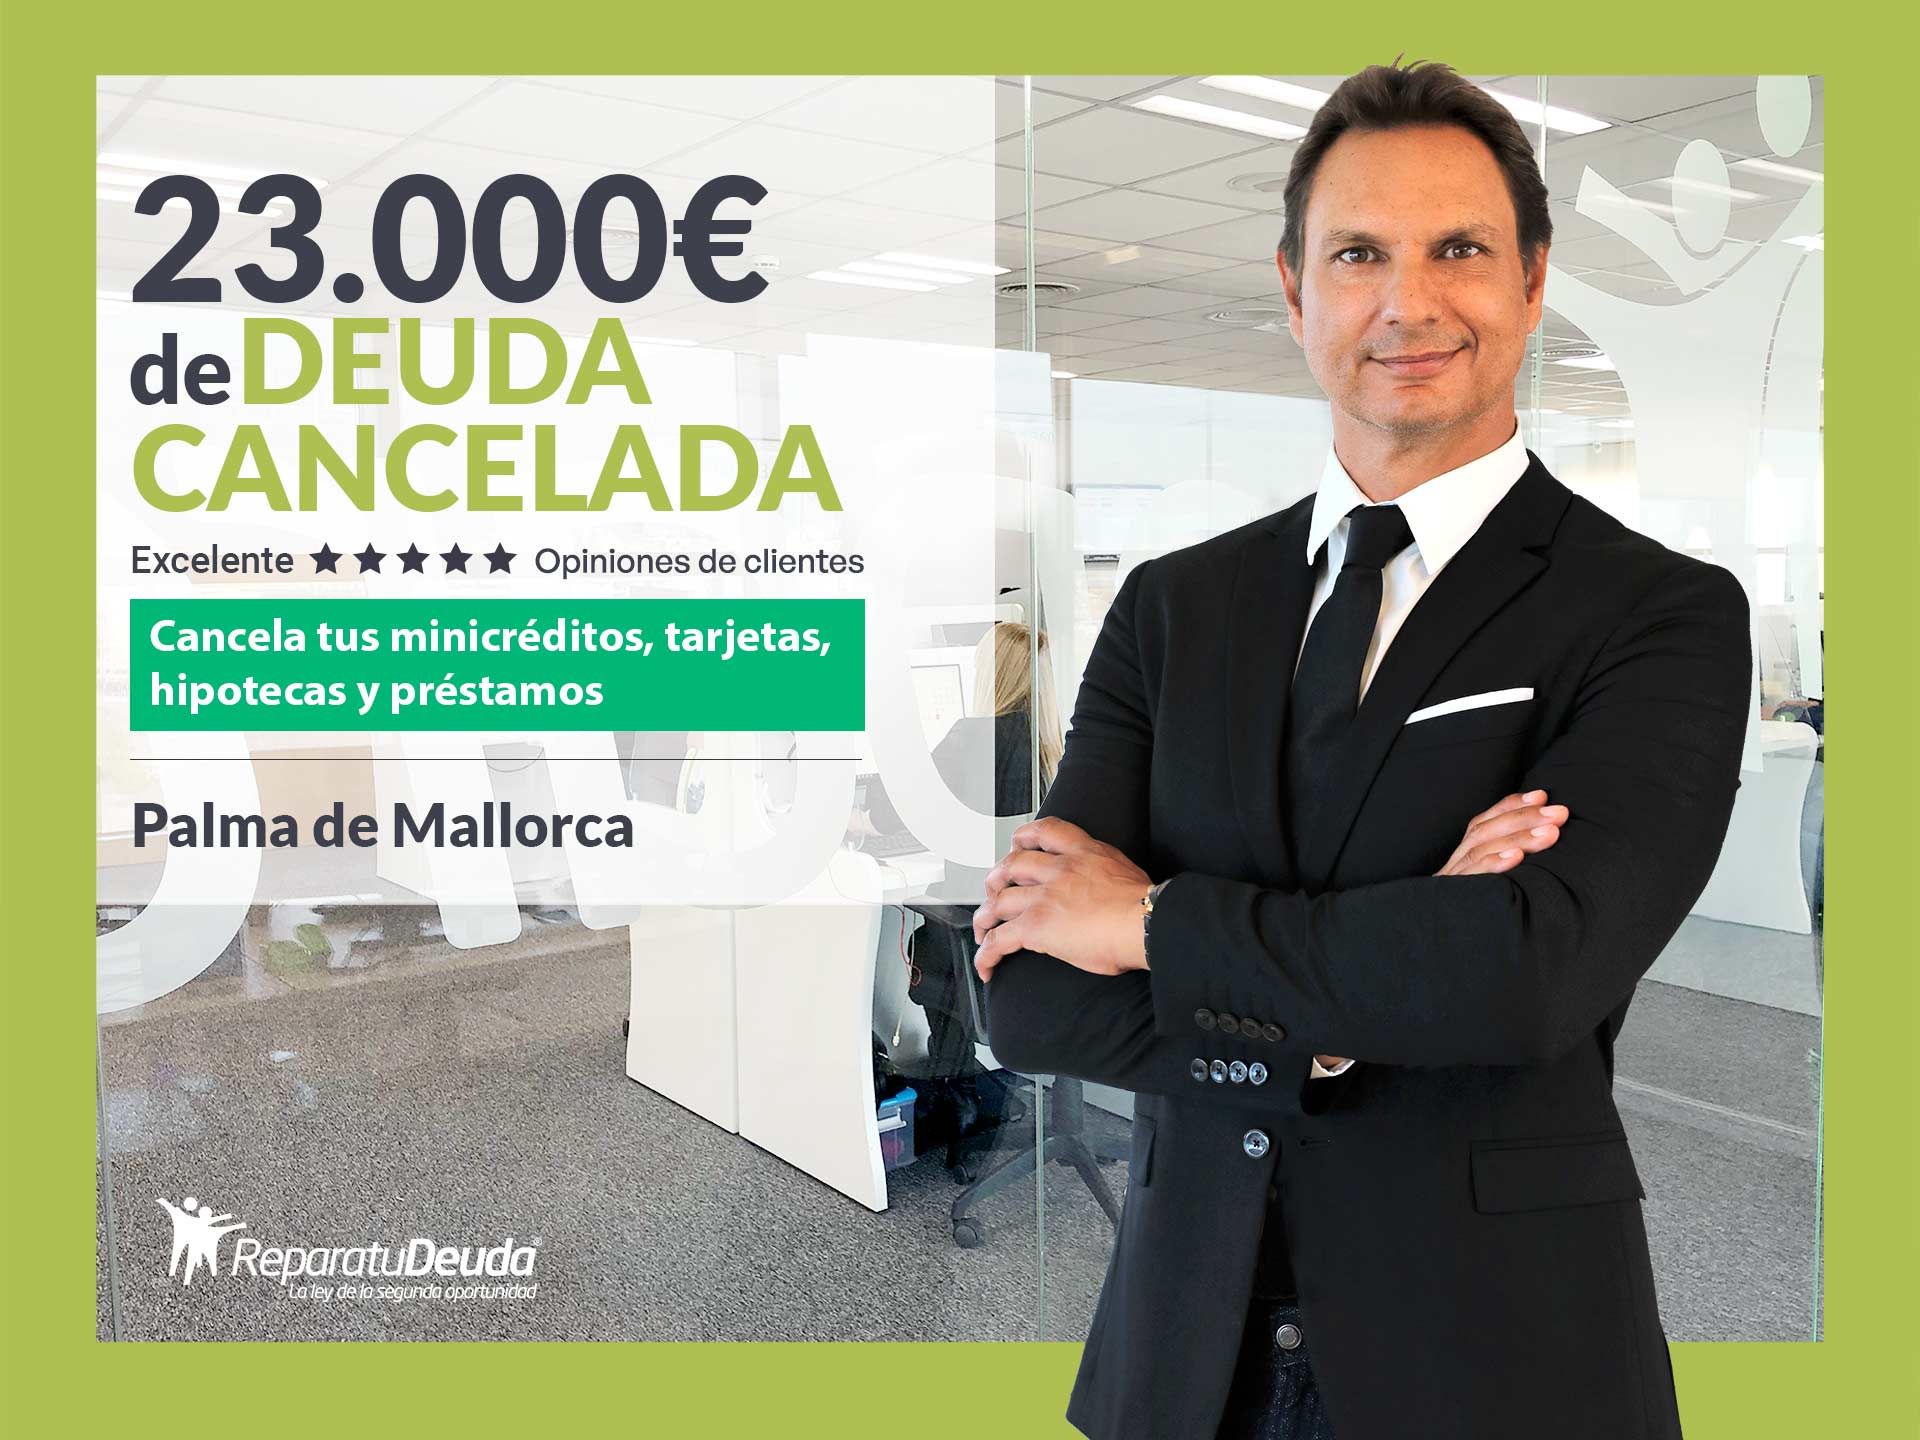 Repara tu Deuda Abogados cancela 23.000? en Palma de Mallorca (Baleares) con la Ley de Segunda Oportunidad